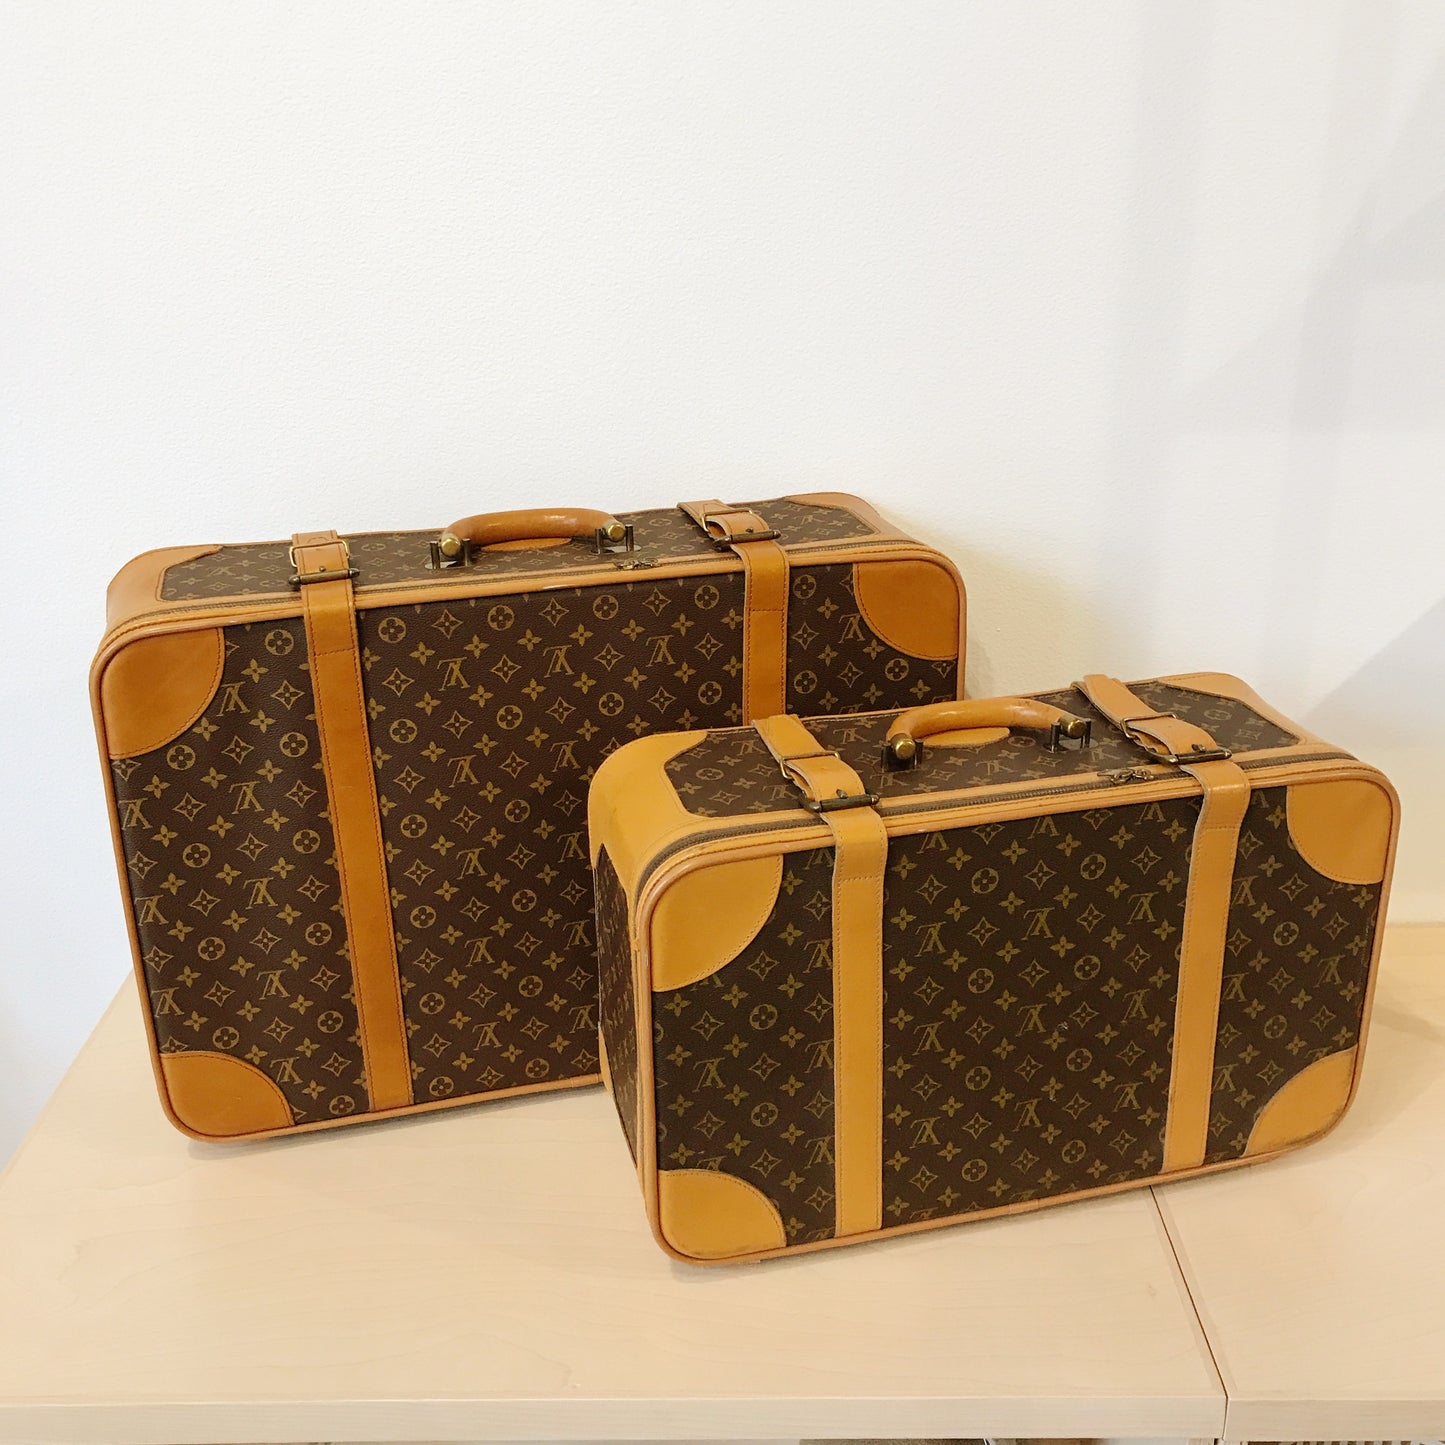 Large Louis Vuitton luggage Set suitcase bag